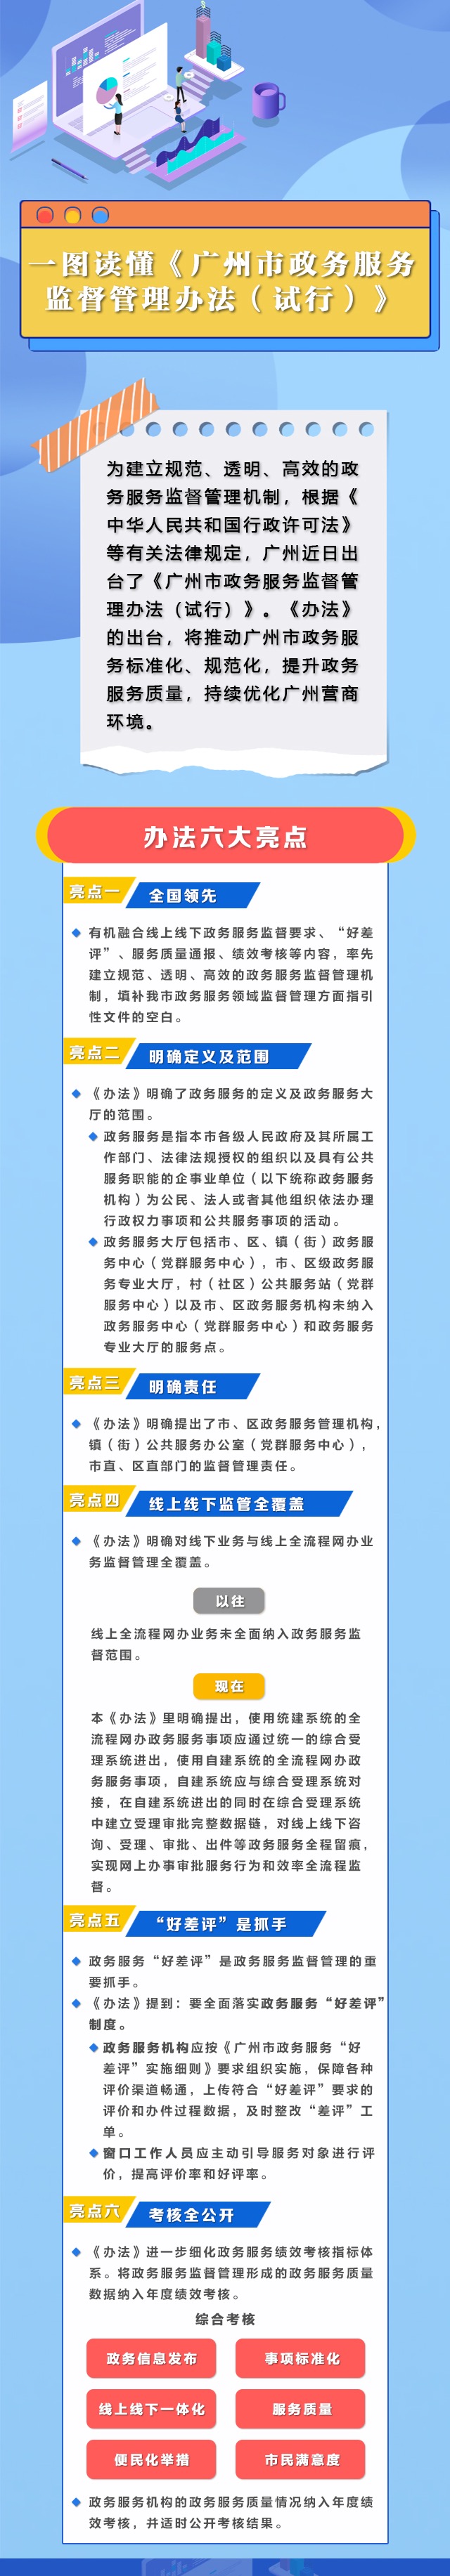 以此为准-广州市政务服务监督管理办法图解.jpg